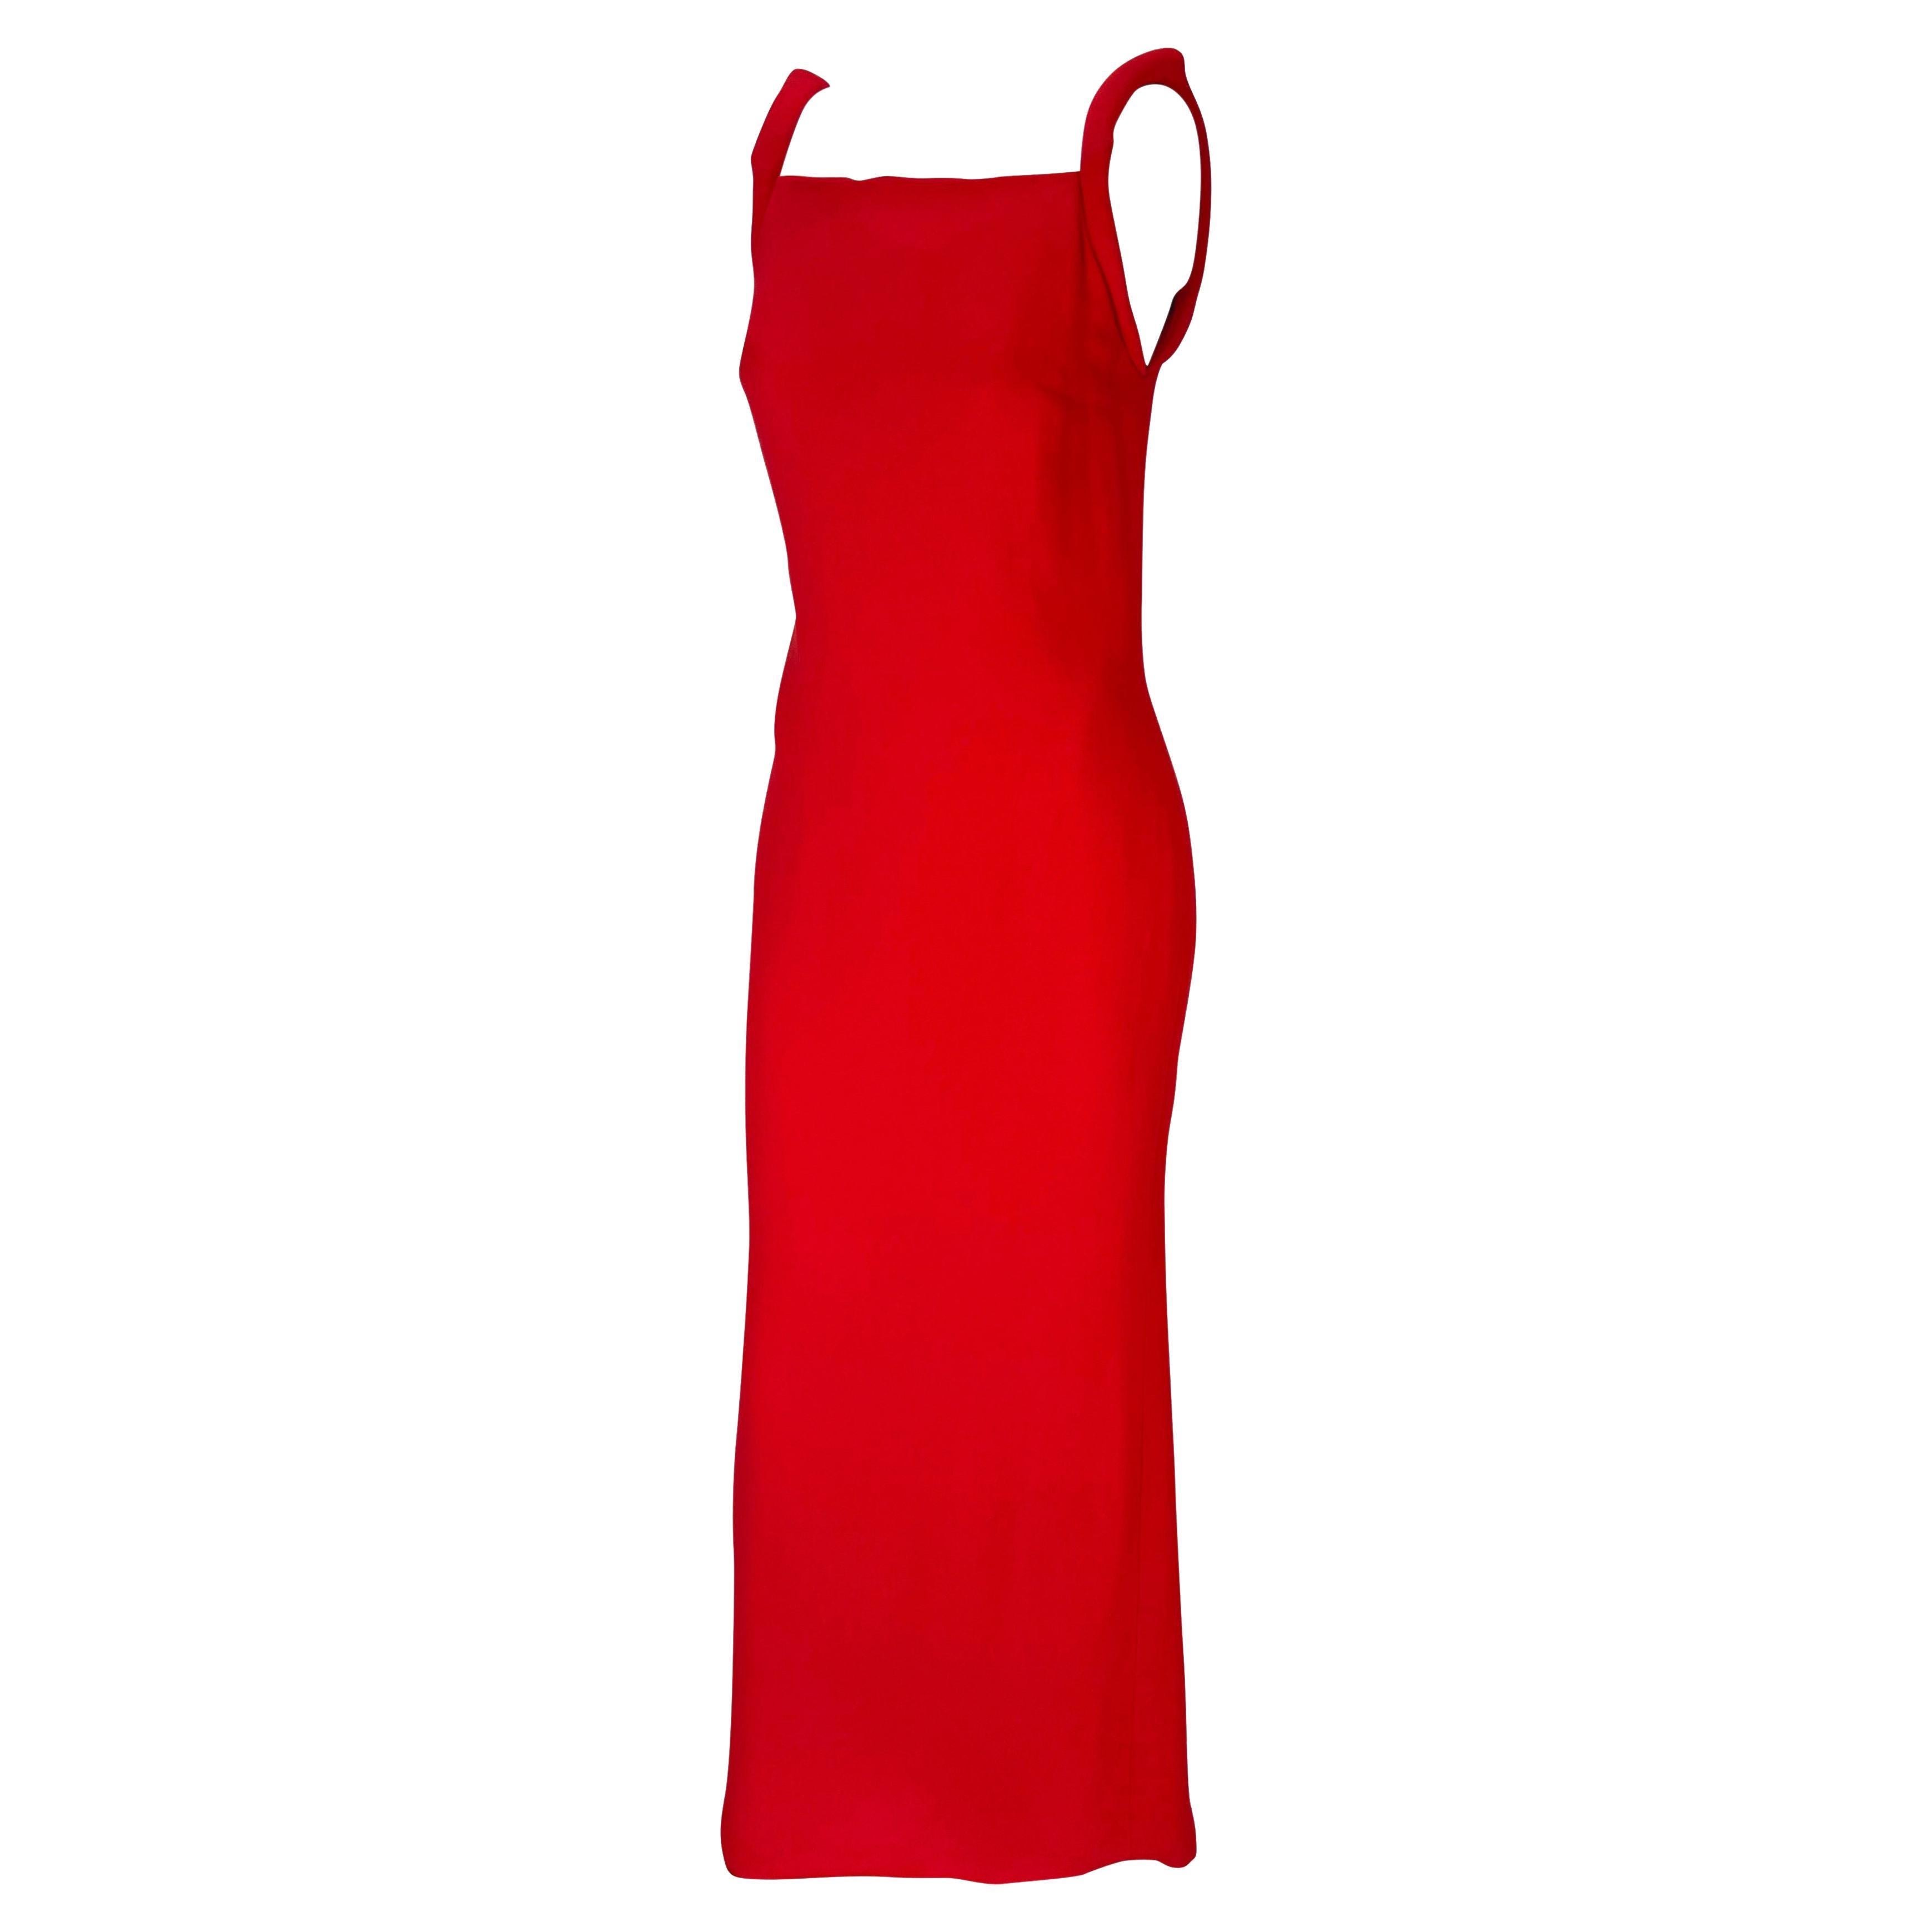 Elle présente une magnifique robe rouge vif Gianni Versace Couture, créée par Donatella Versace. Datant de 1998, cette robe à colonnes présente un haut décolleté carré et un bas dos semi-exposé. Cette robe est complétée par des bretelles paddées.